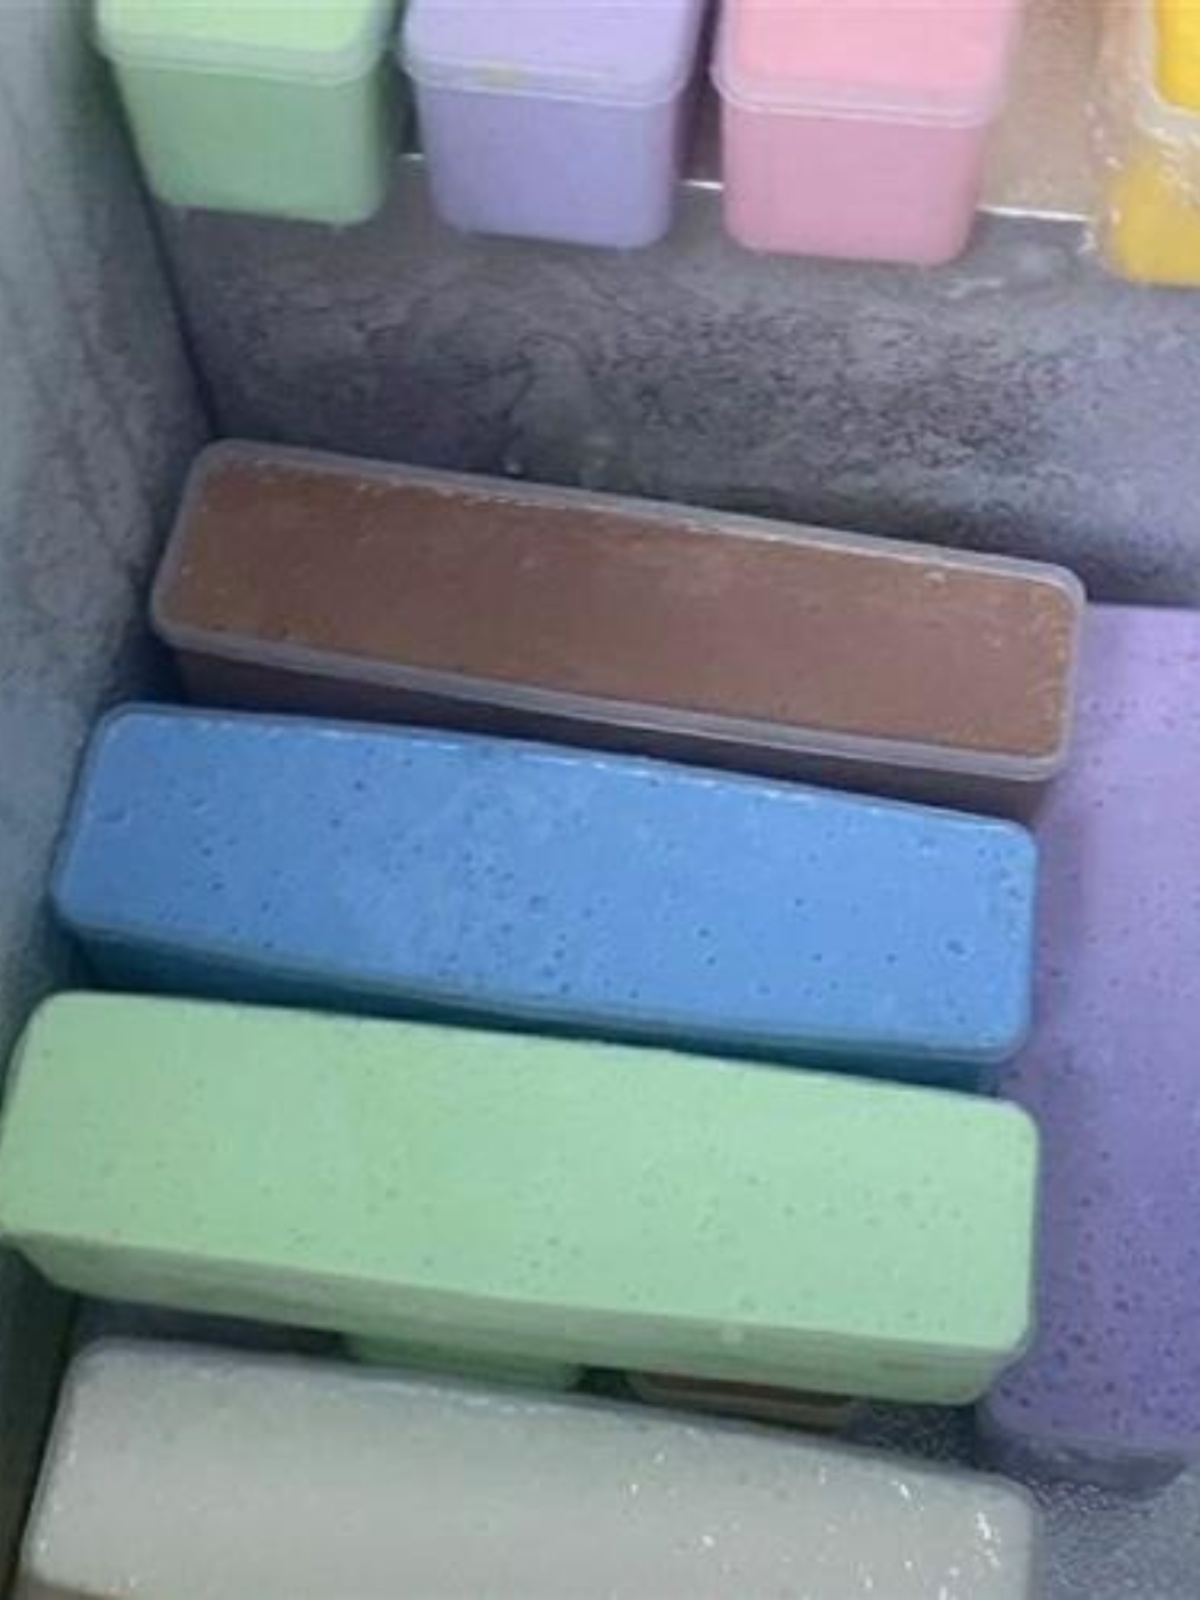 冰淇淋盒长方形制作盒子网红手工彩虹七彩冰淇淋工具摆摊隔色模具